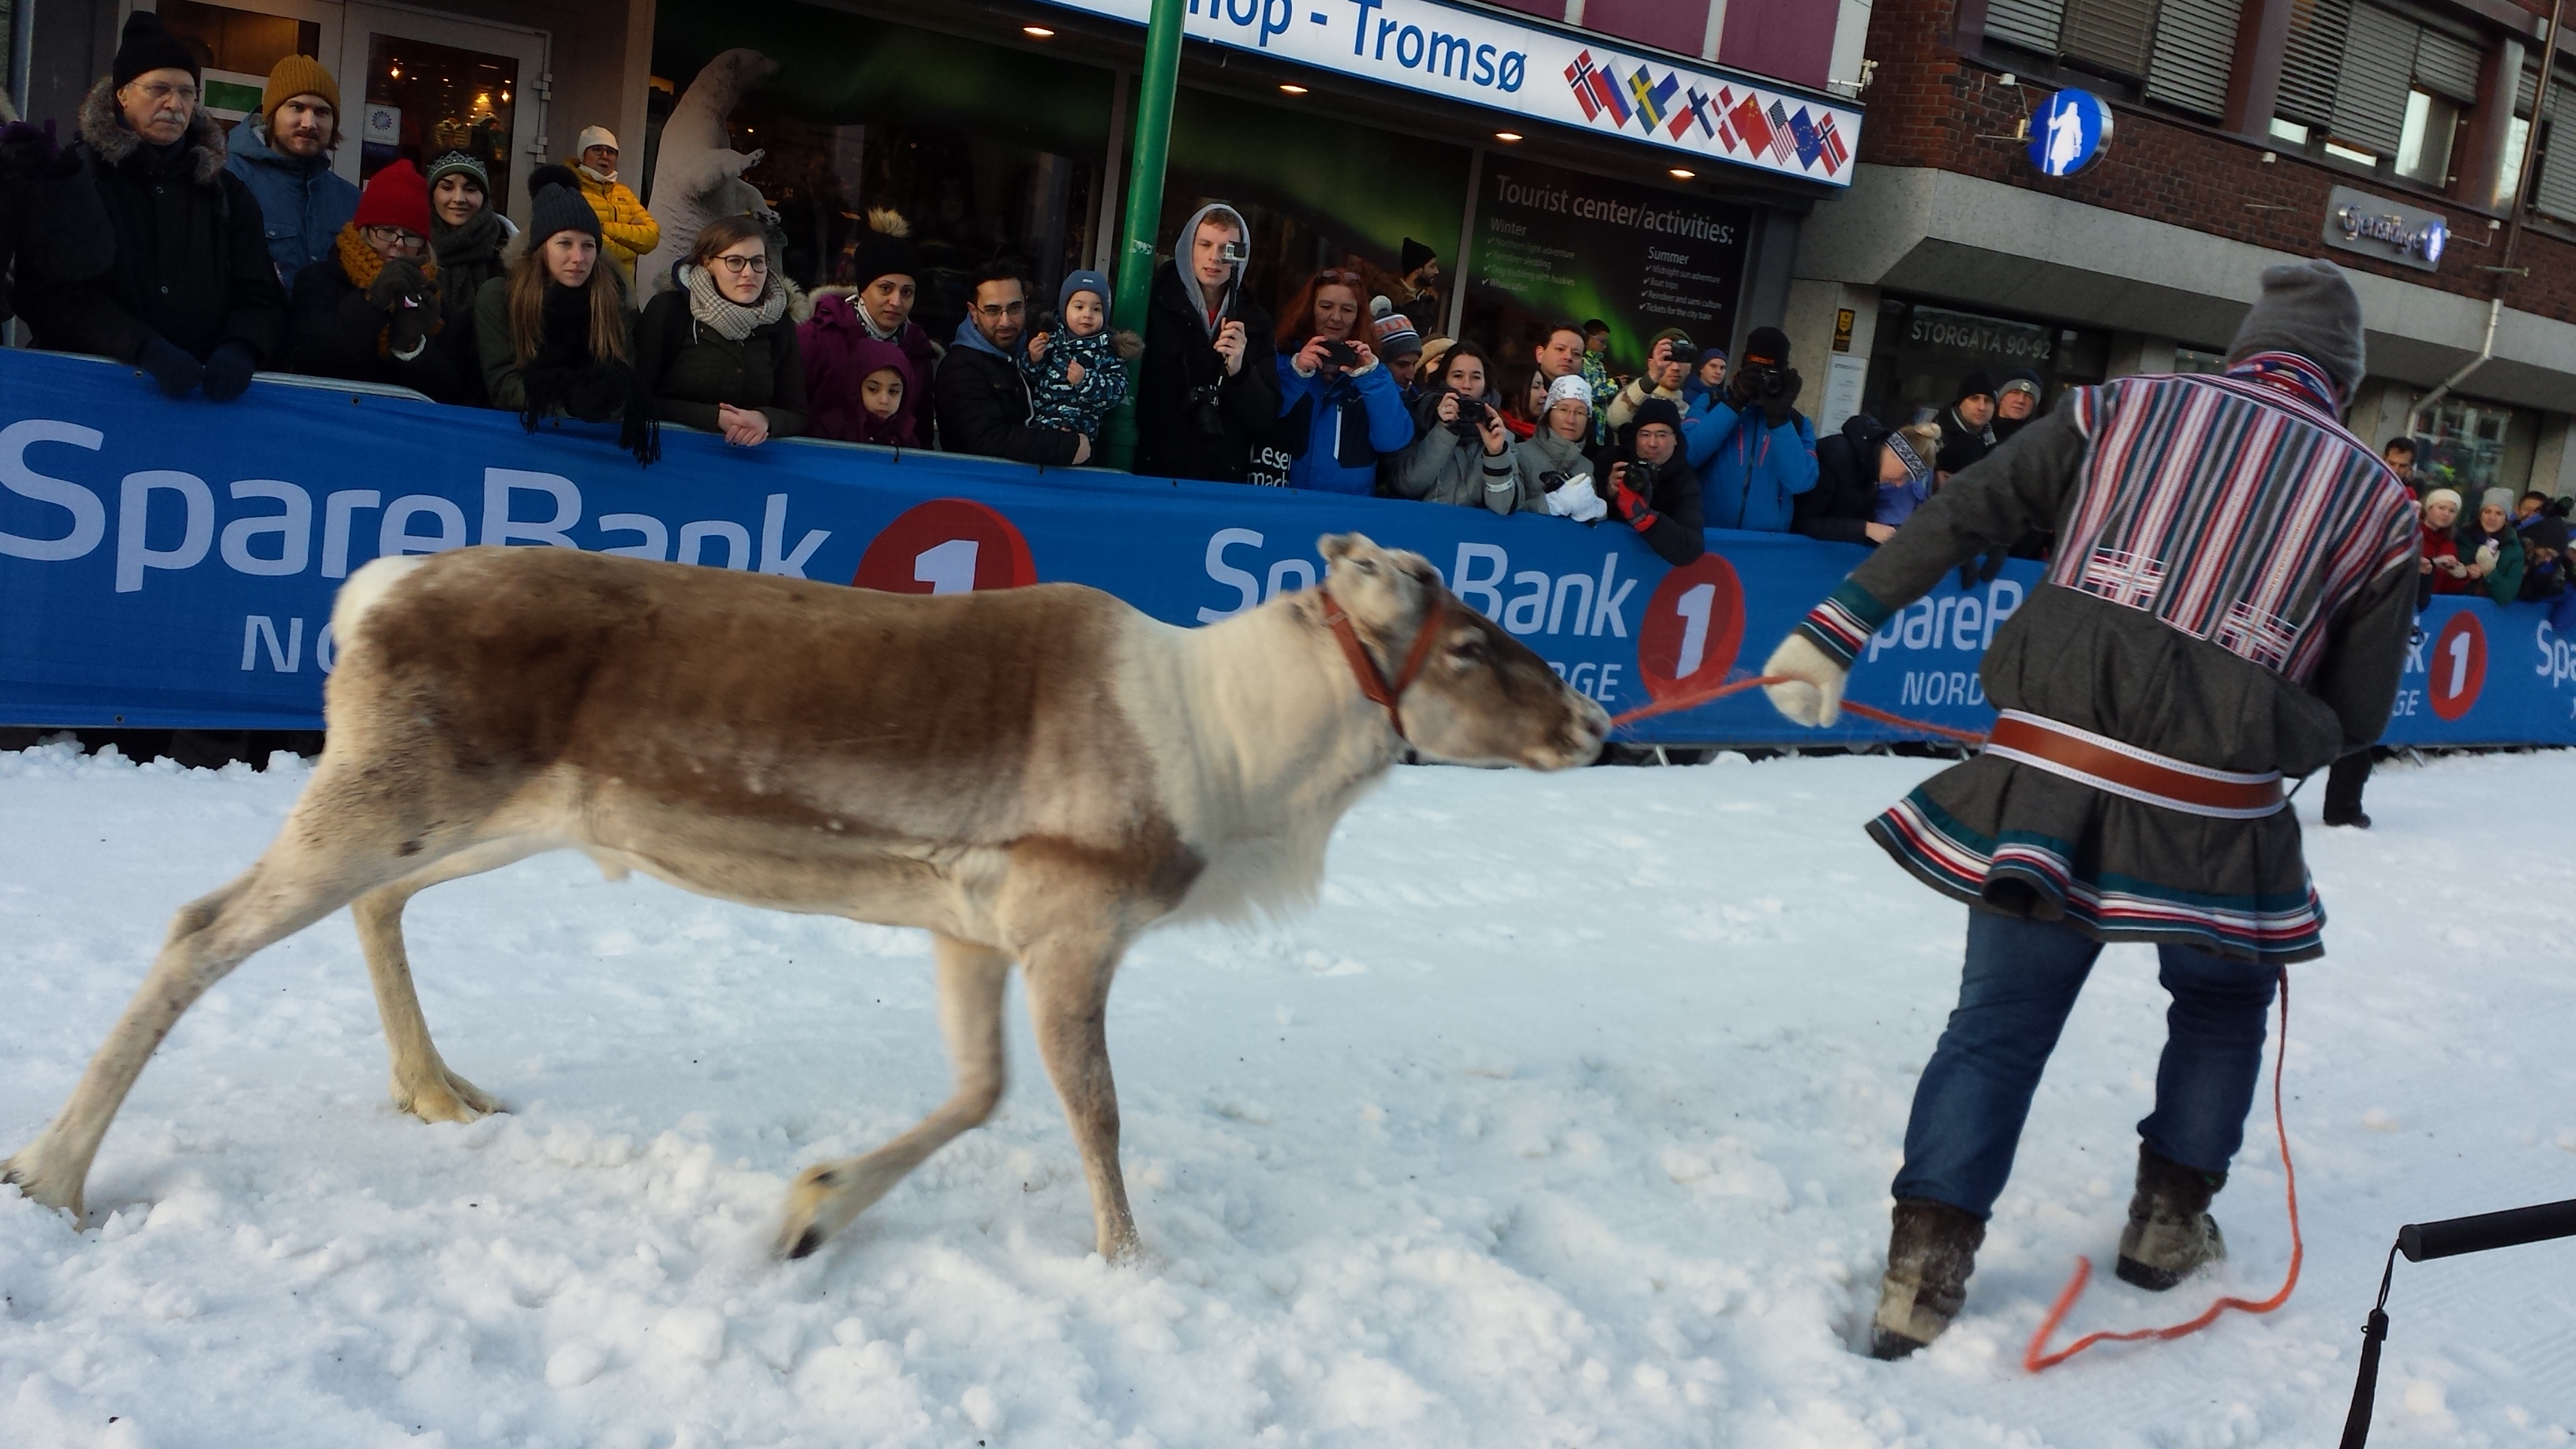 Reindeer at Tromso Norway